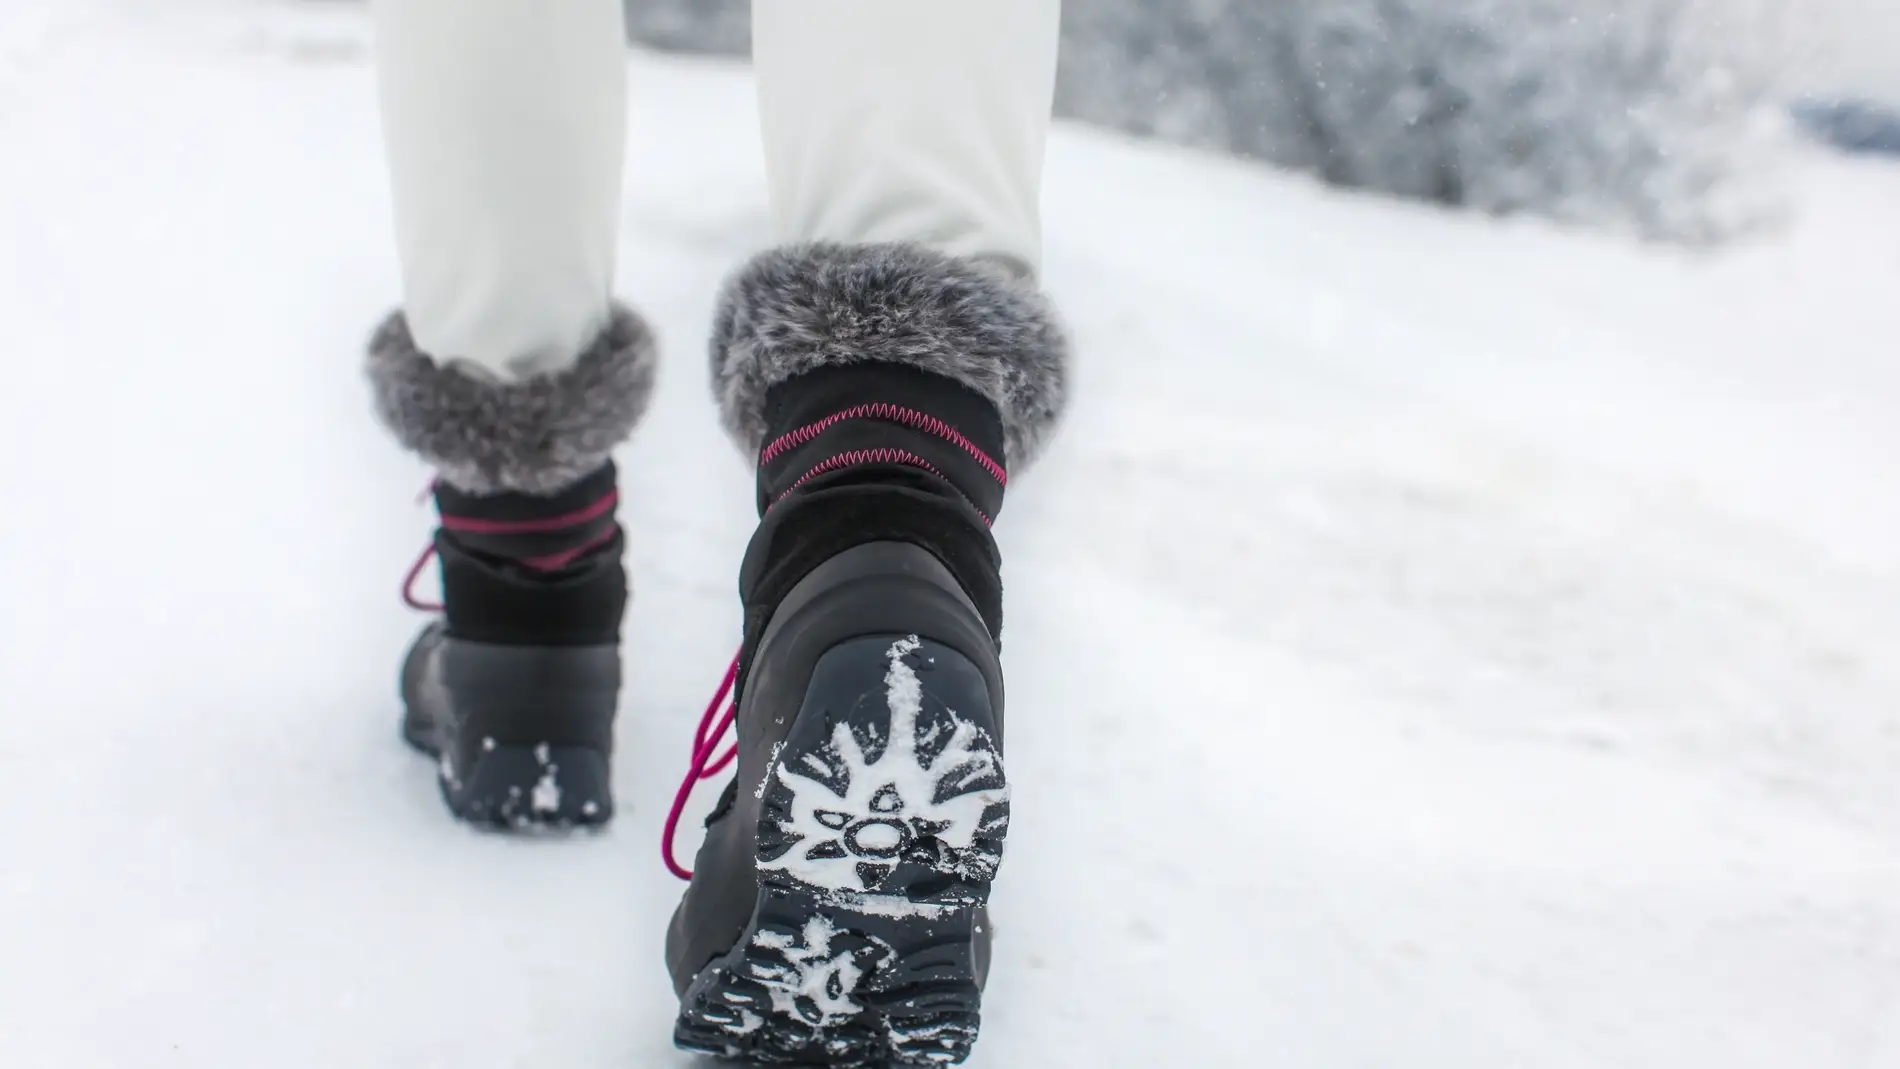 Entretien avec Jaime Larraz, est-ce mauvais de porter des bottes de neige (pauses) quotidiennement ?